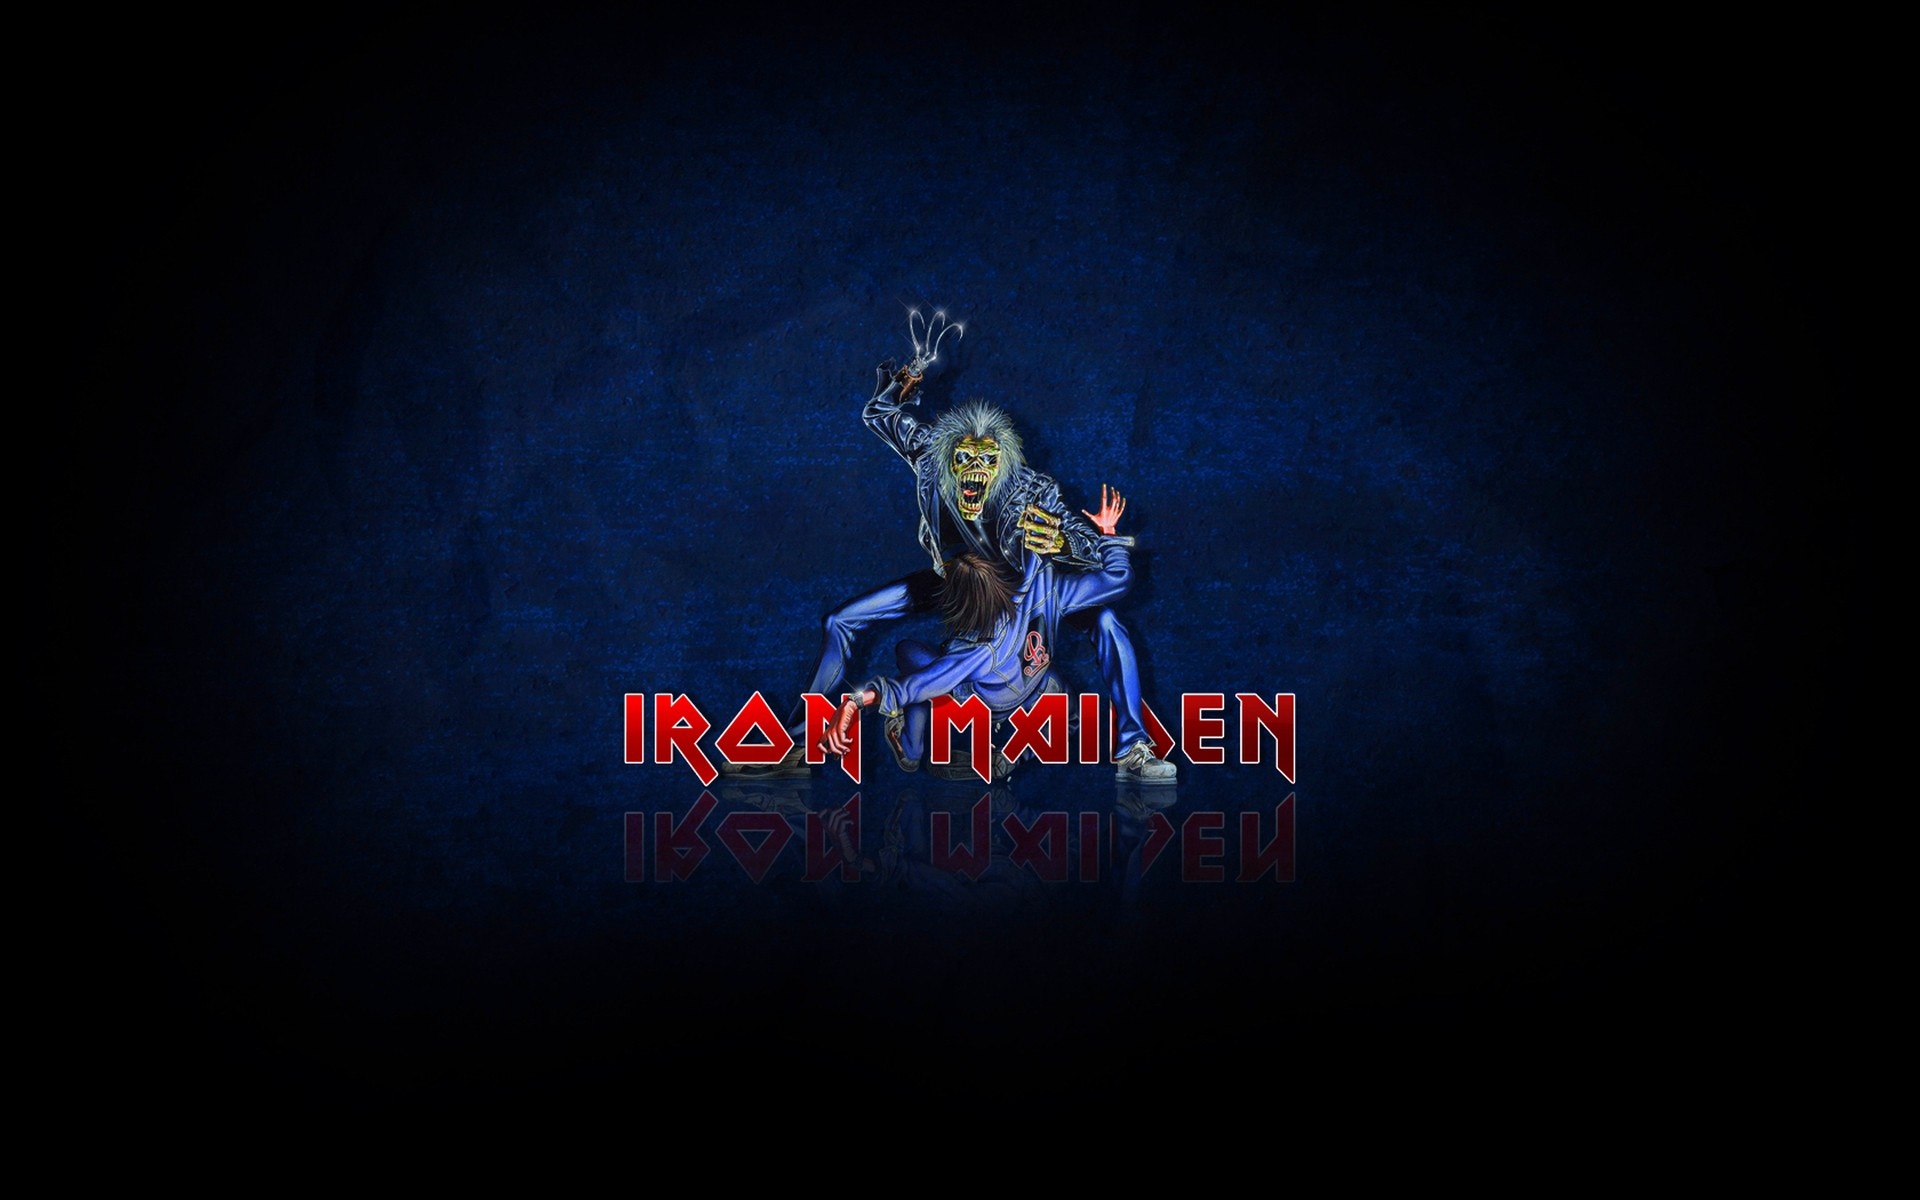 Iron Maiden Logo Desktop Wallpaper And Stock Photos